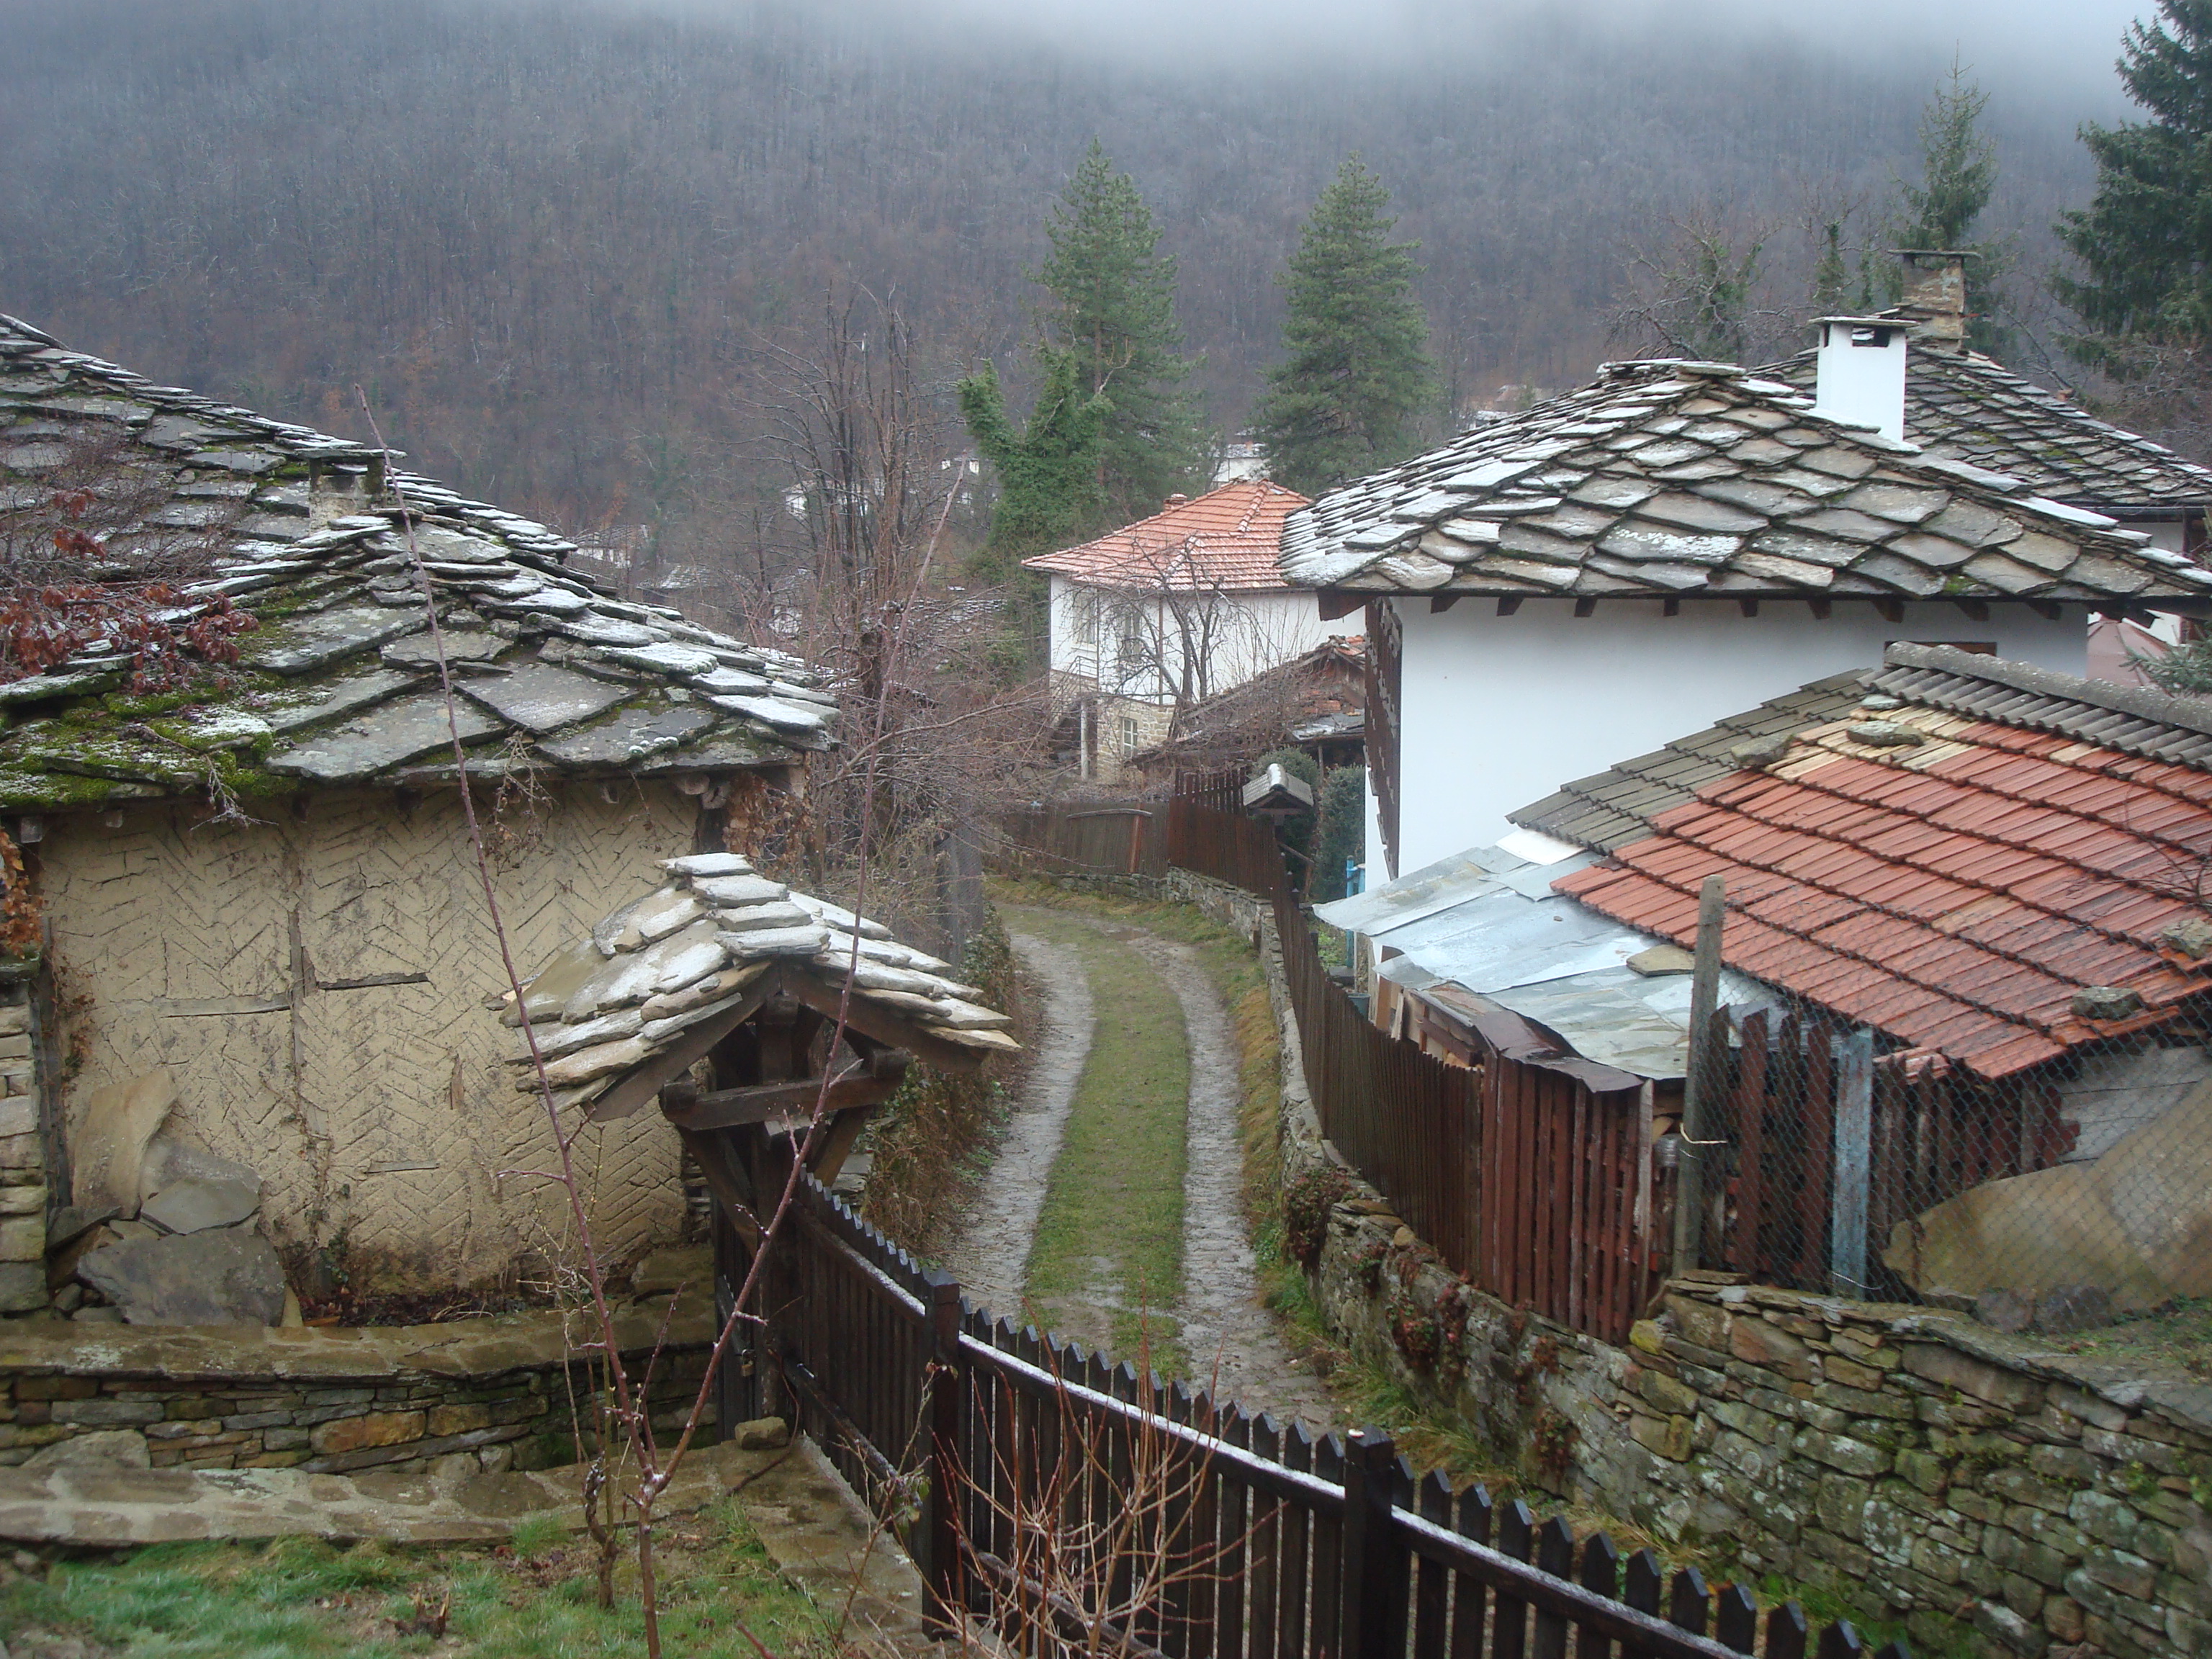 Bojenci village, Bulgaria